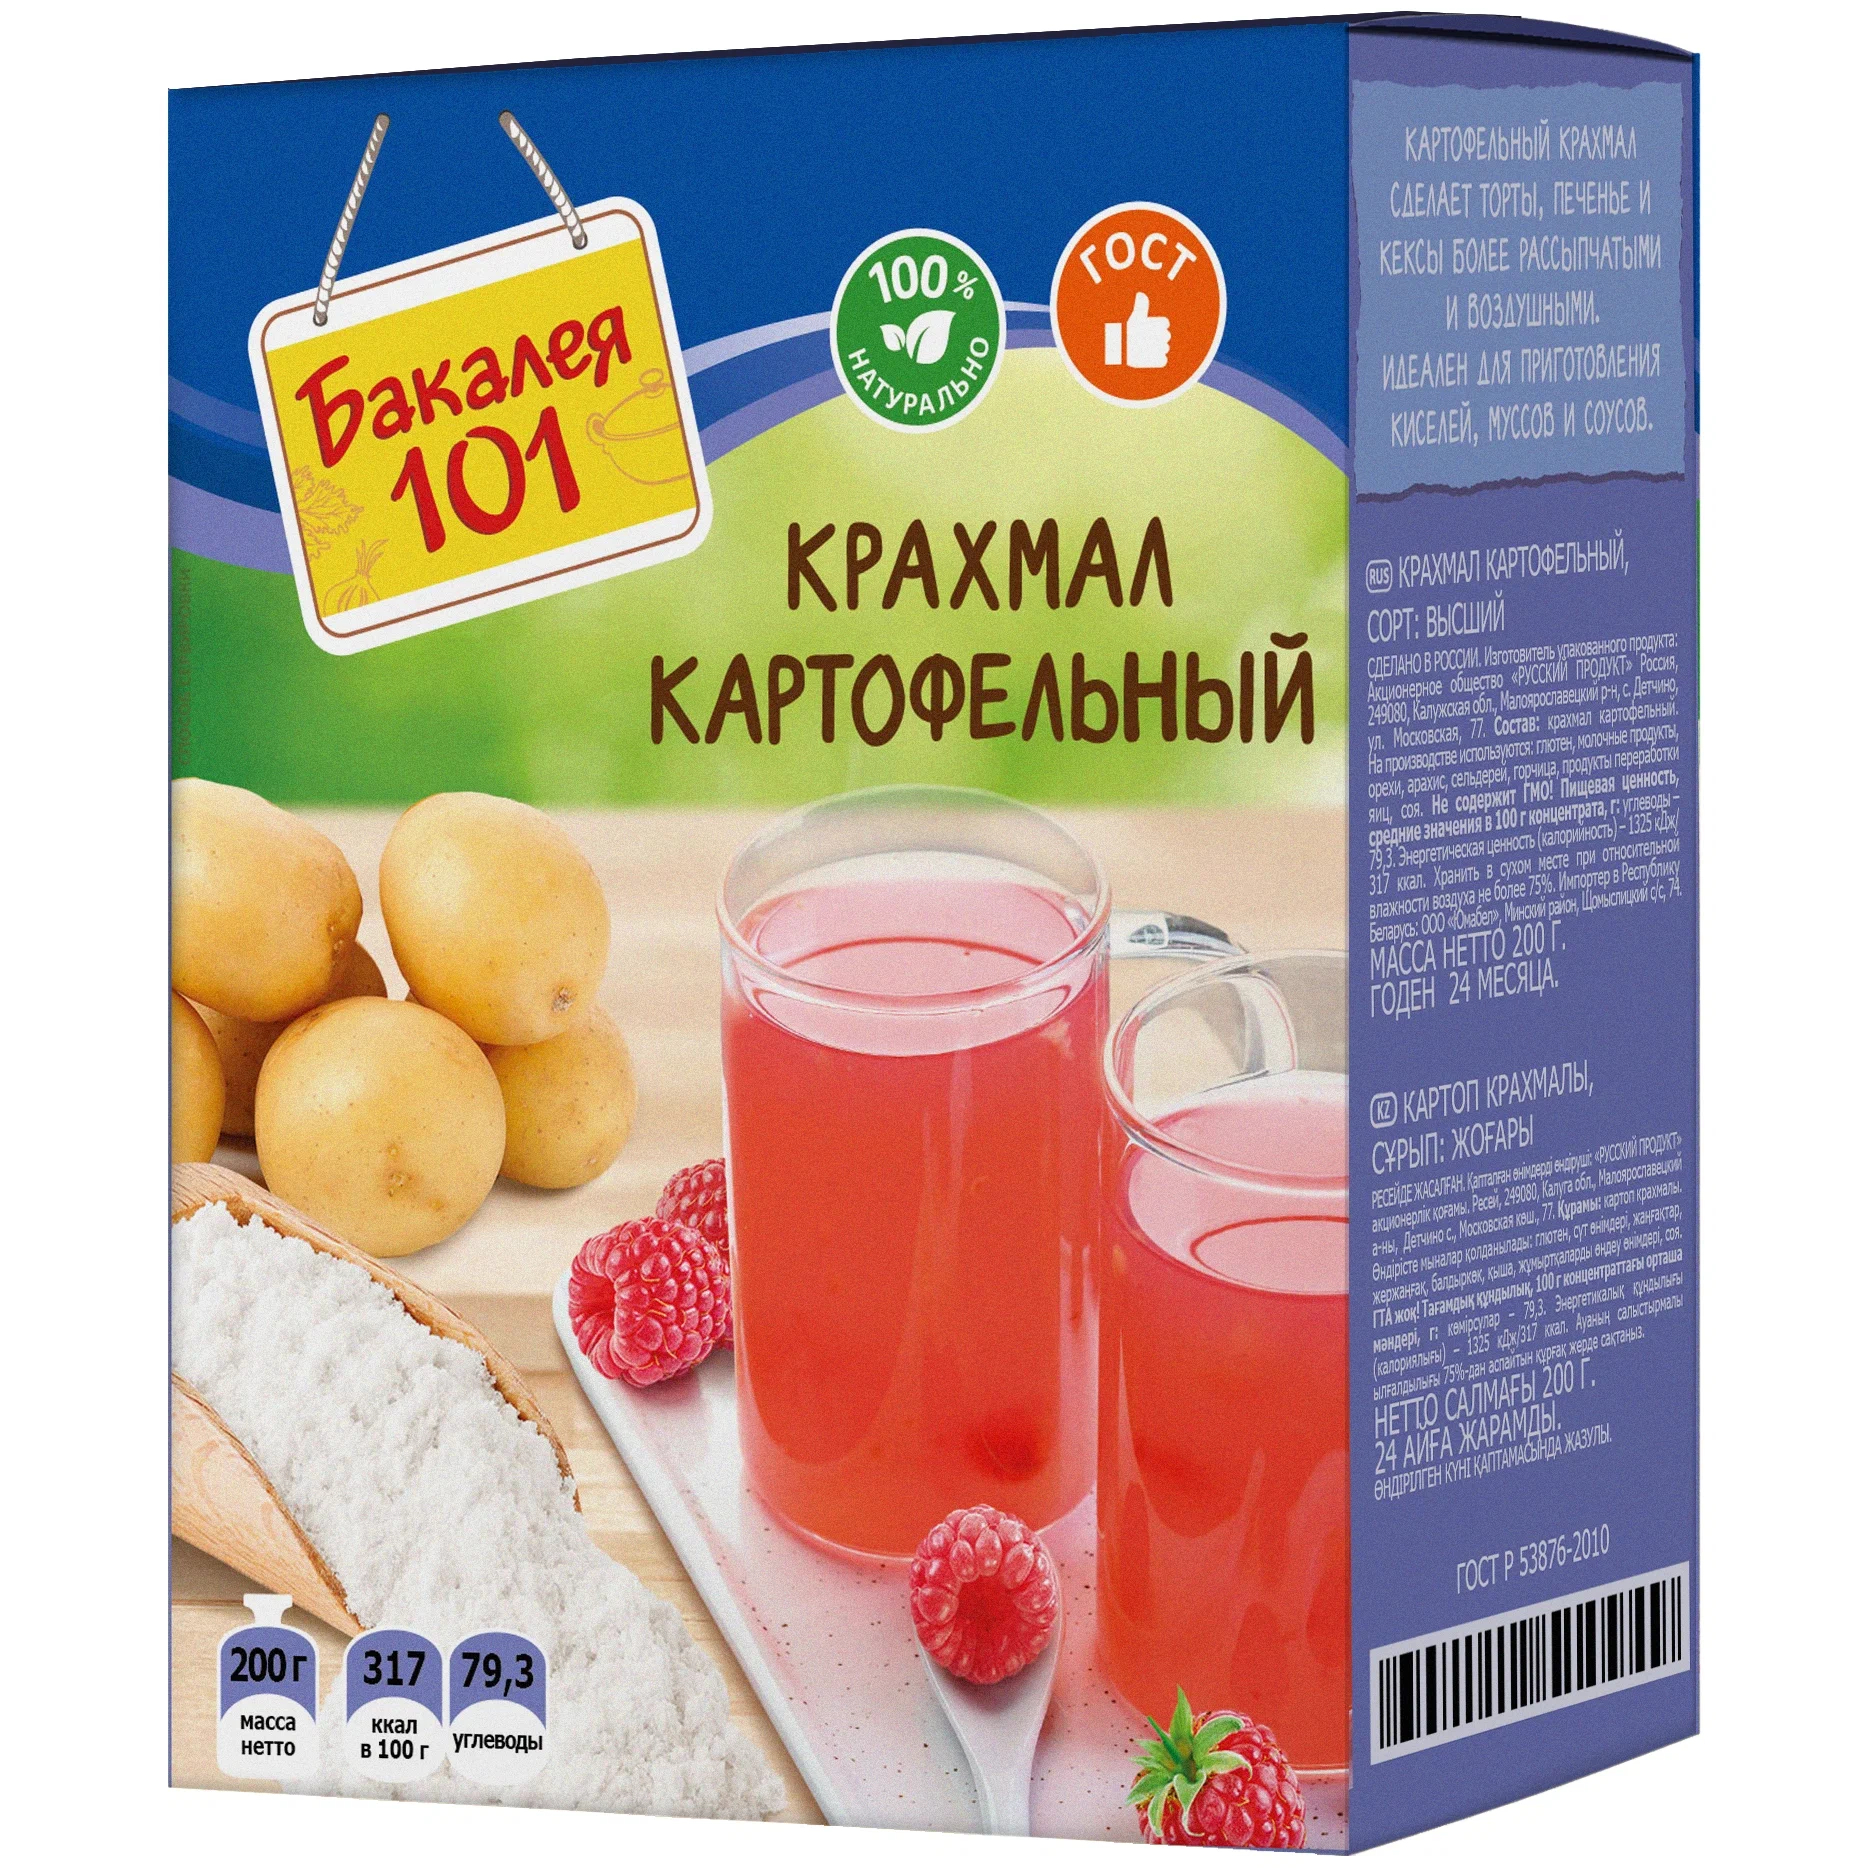 Крахмал картофельный Русский продукт Бакалея 101 200 г цена и фото